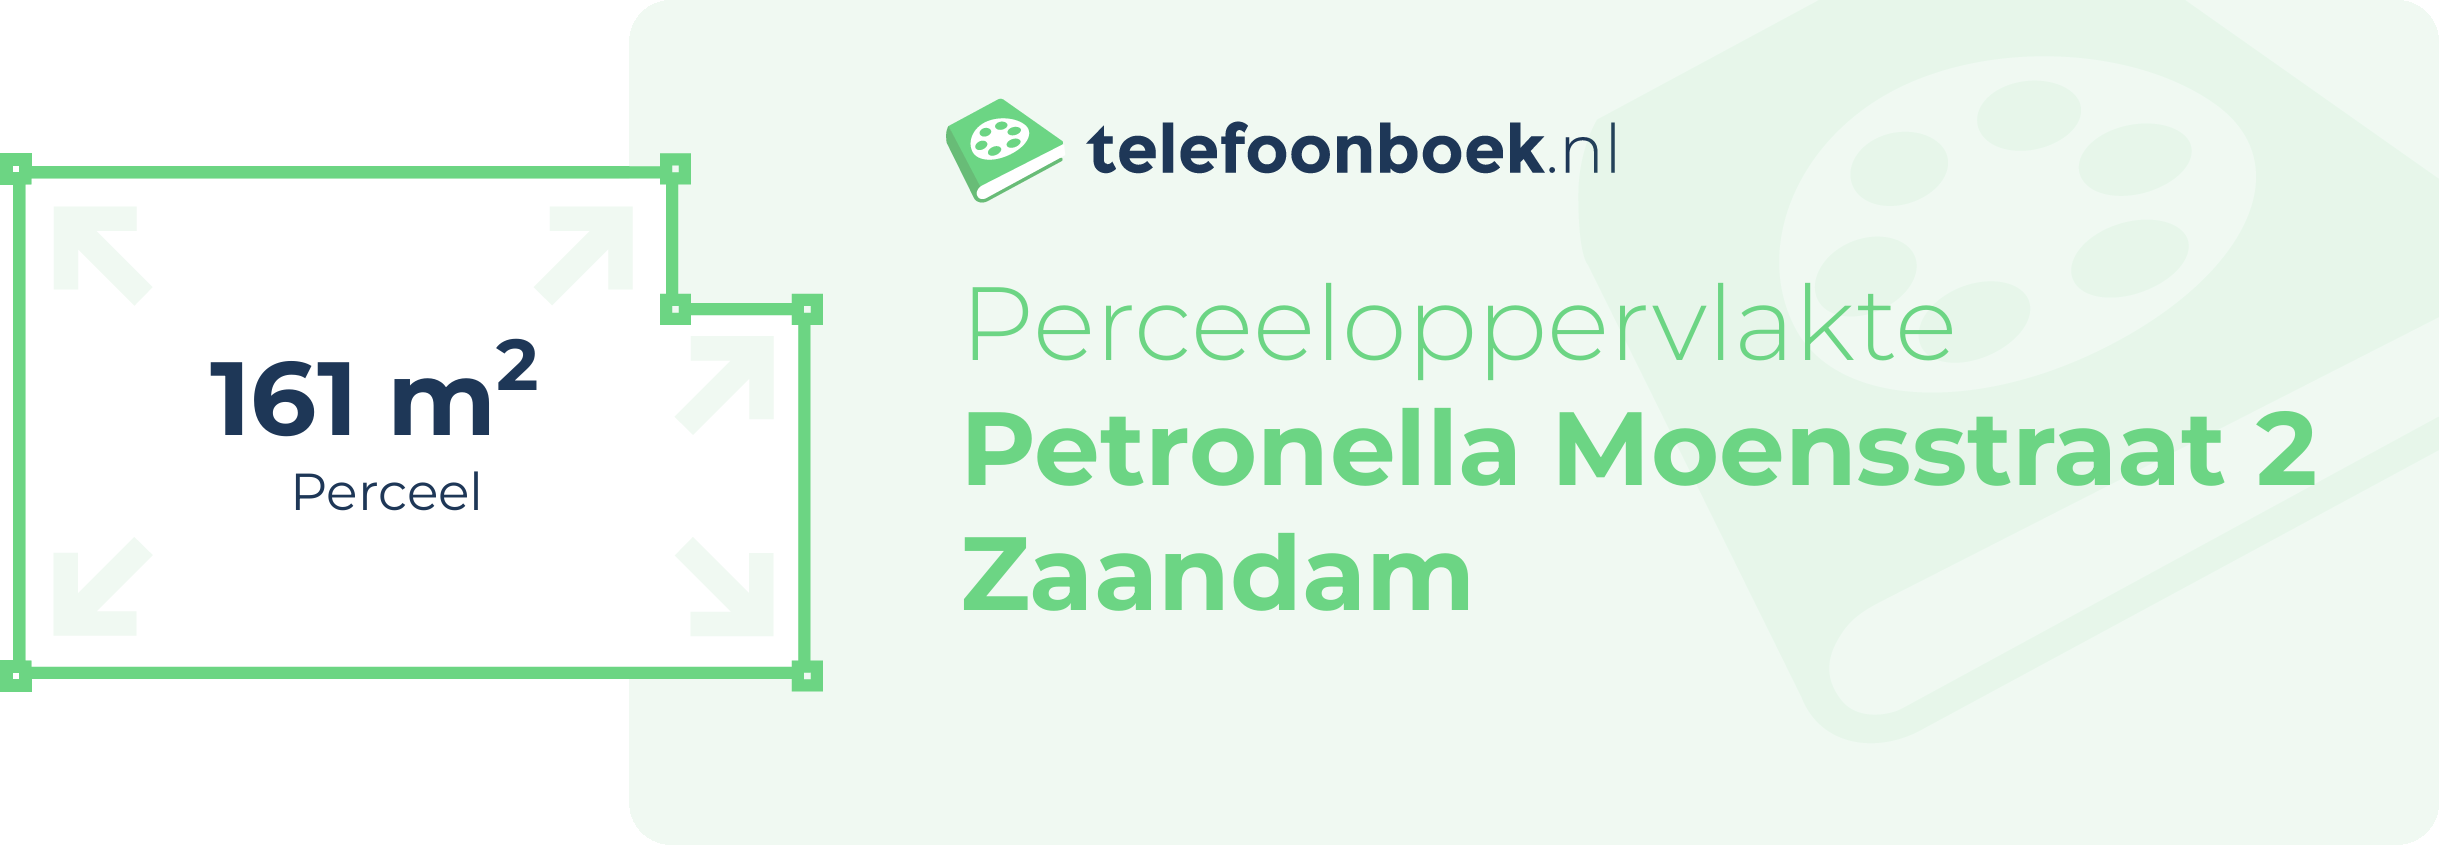 Perceeloppervlakte Petronella Moensstraat 2 Zaandam